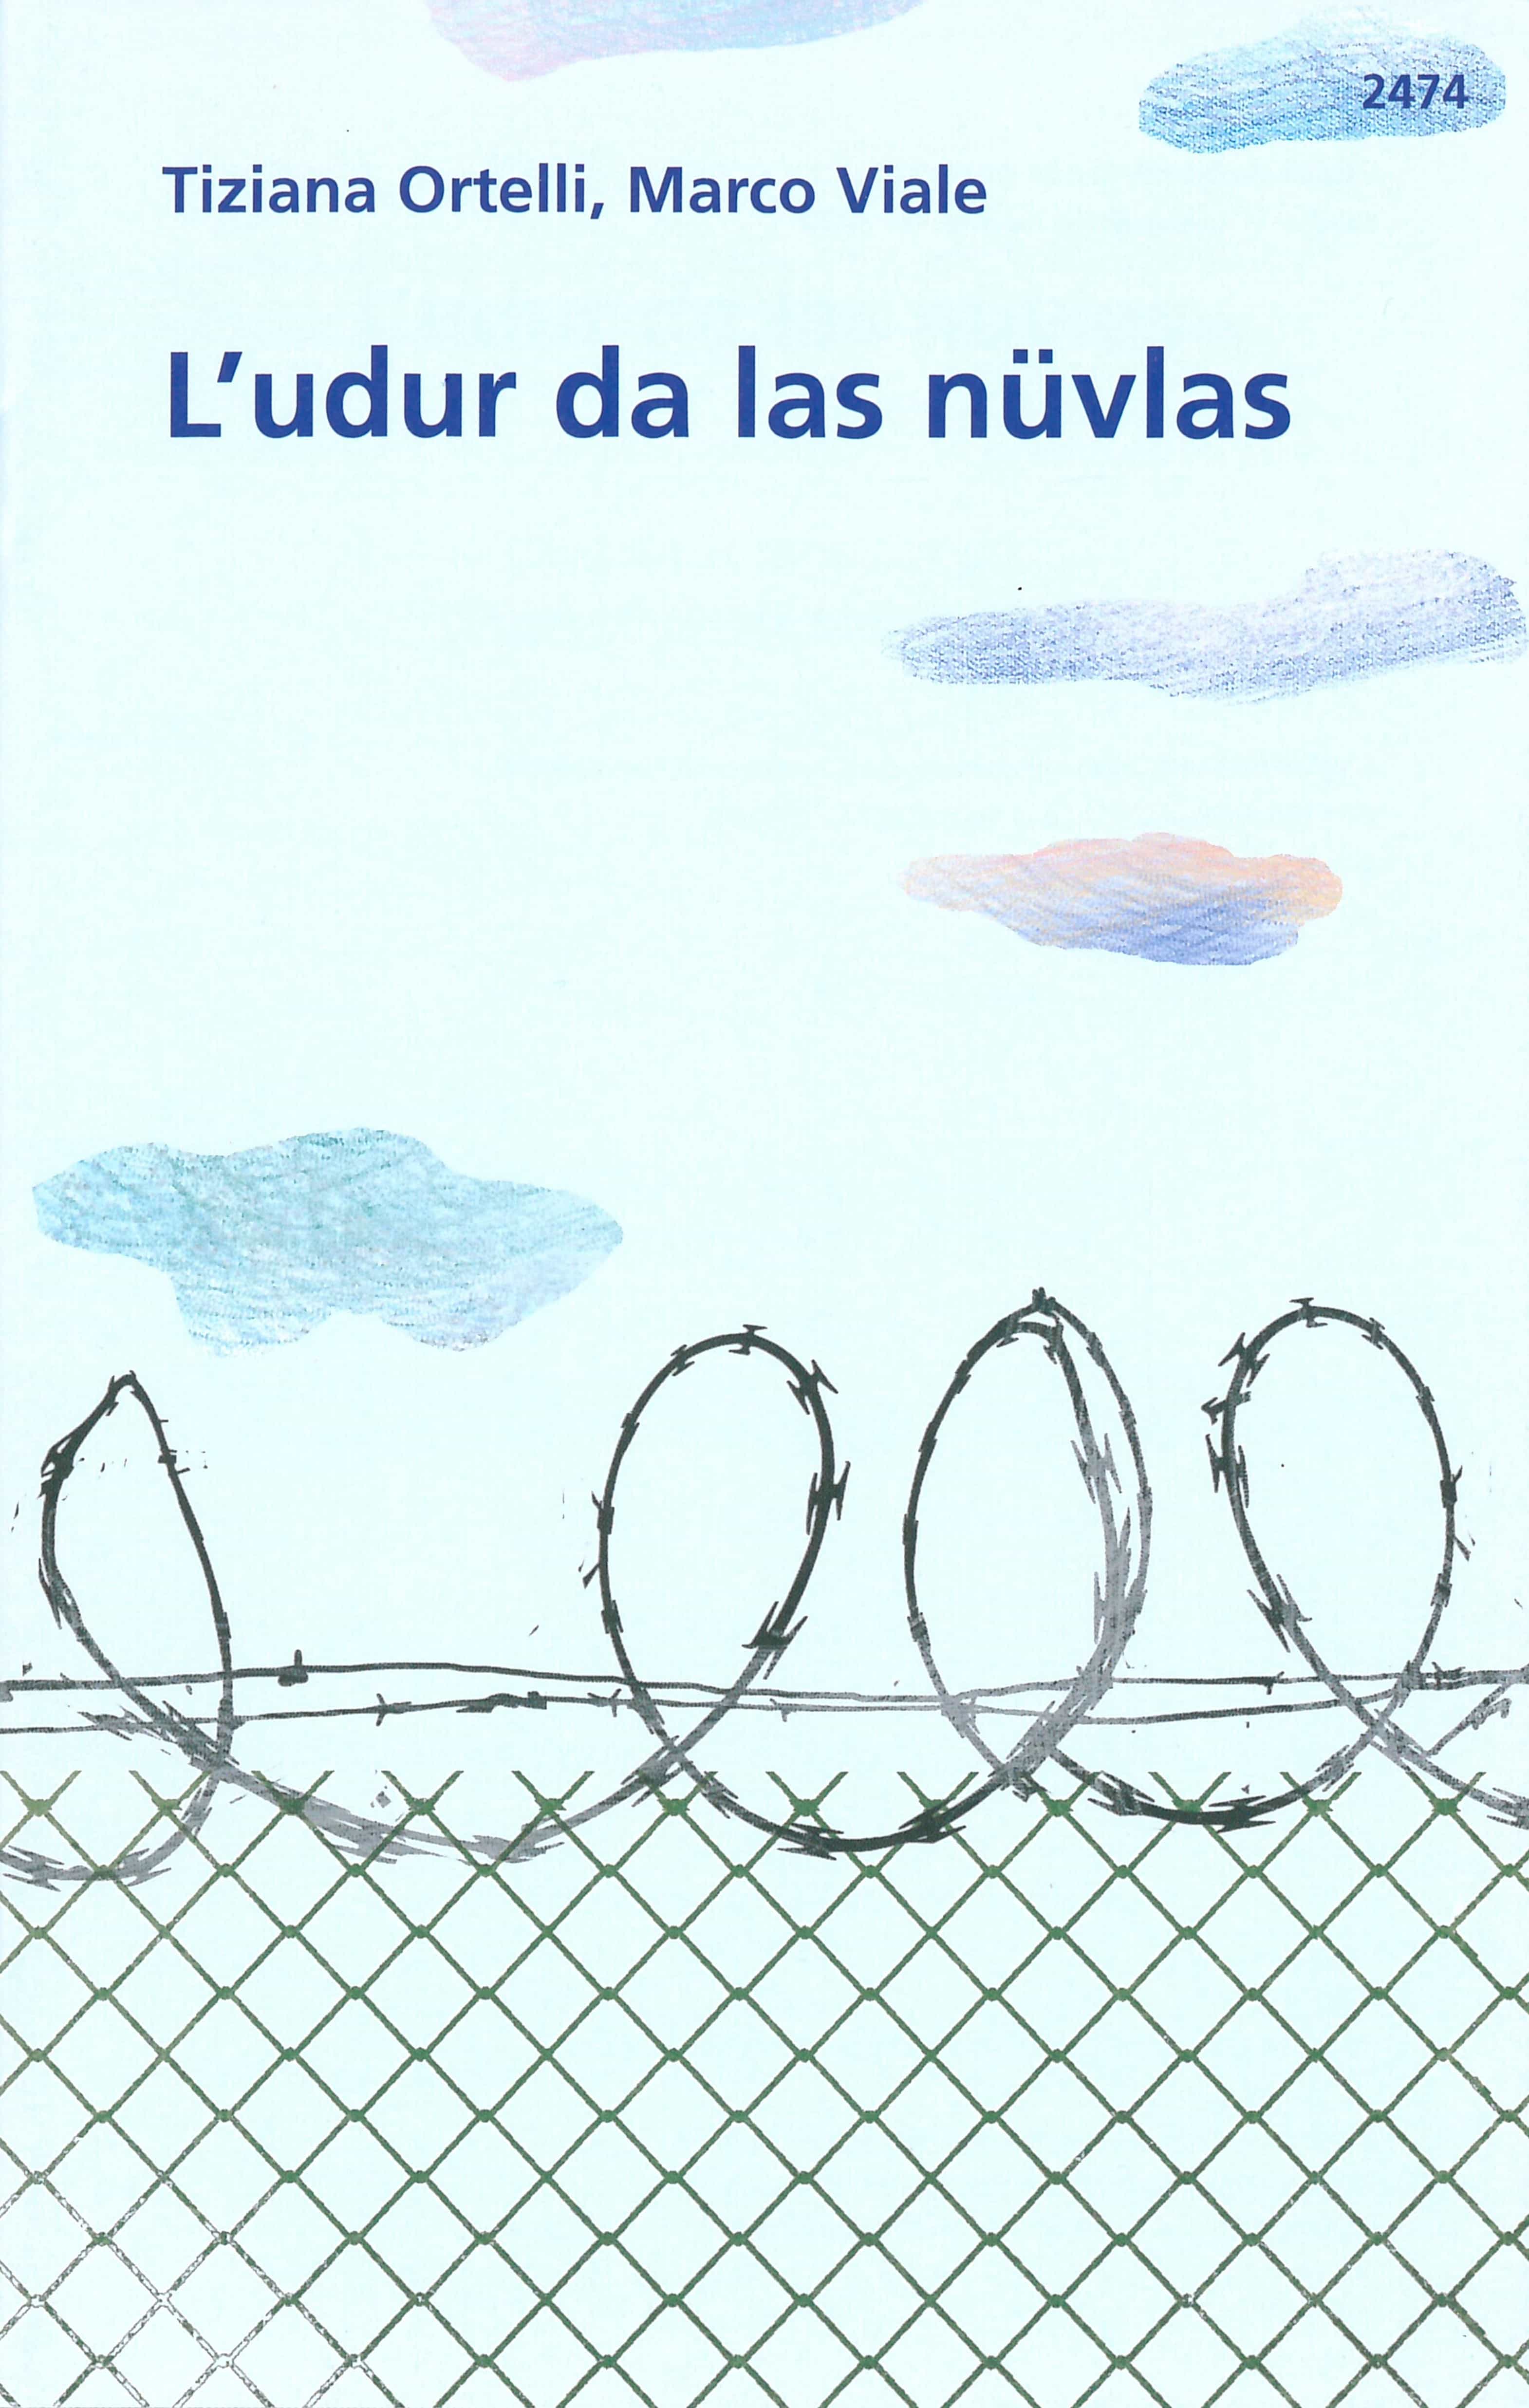 L'udur da las nuevlas, ein Kinderbuch von Tiziana Ortelli, Illustration von Marco Viale, SJW Verlag, Migration